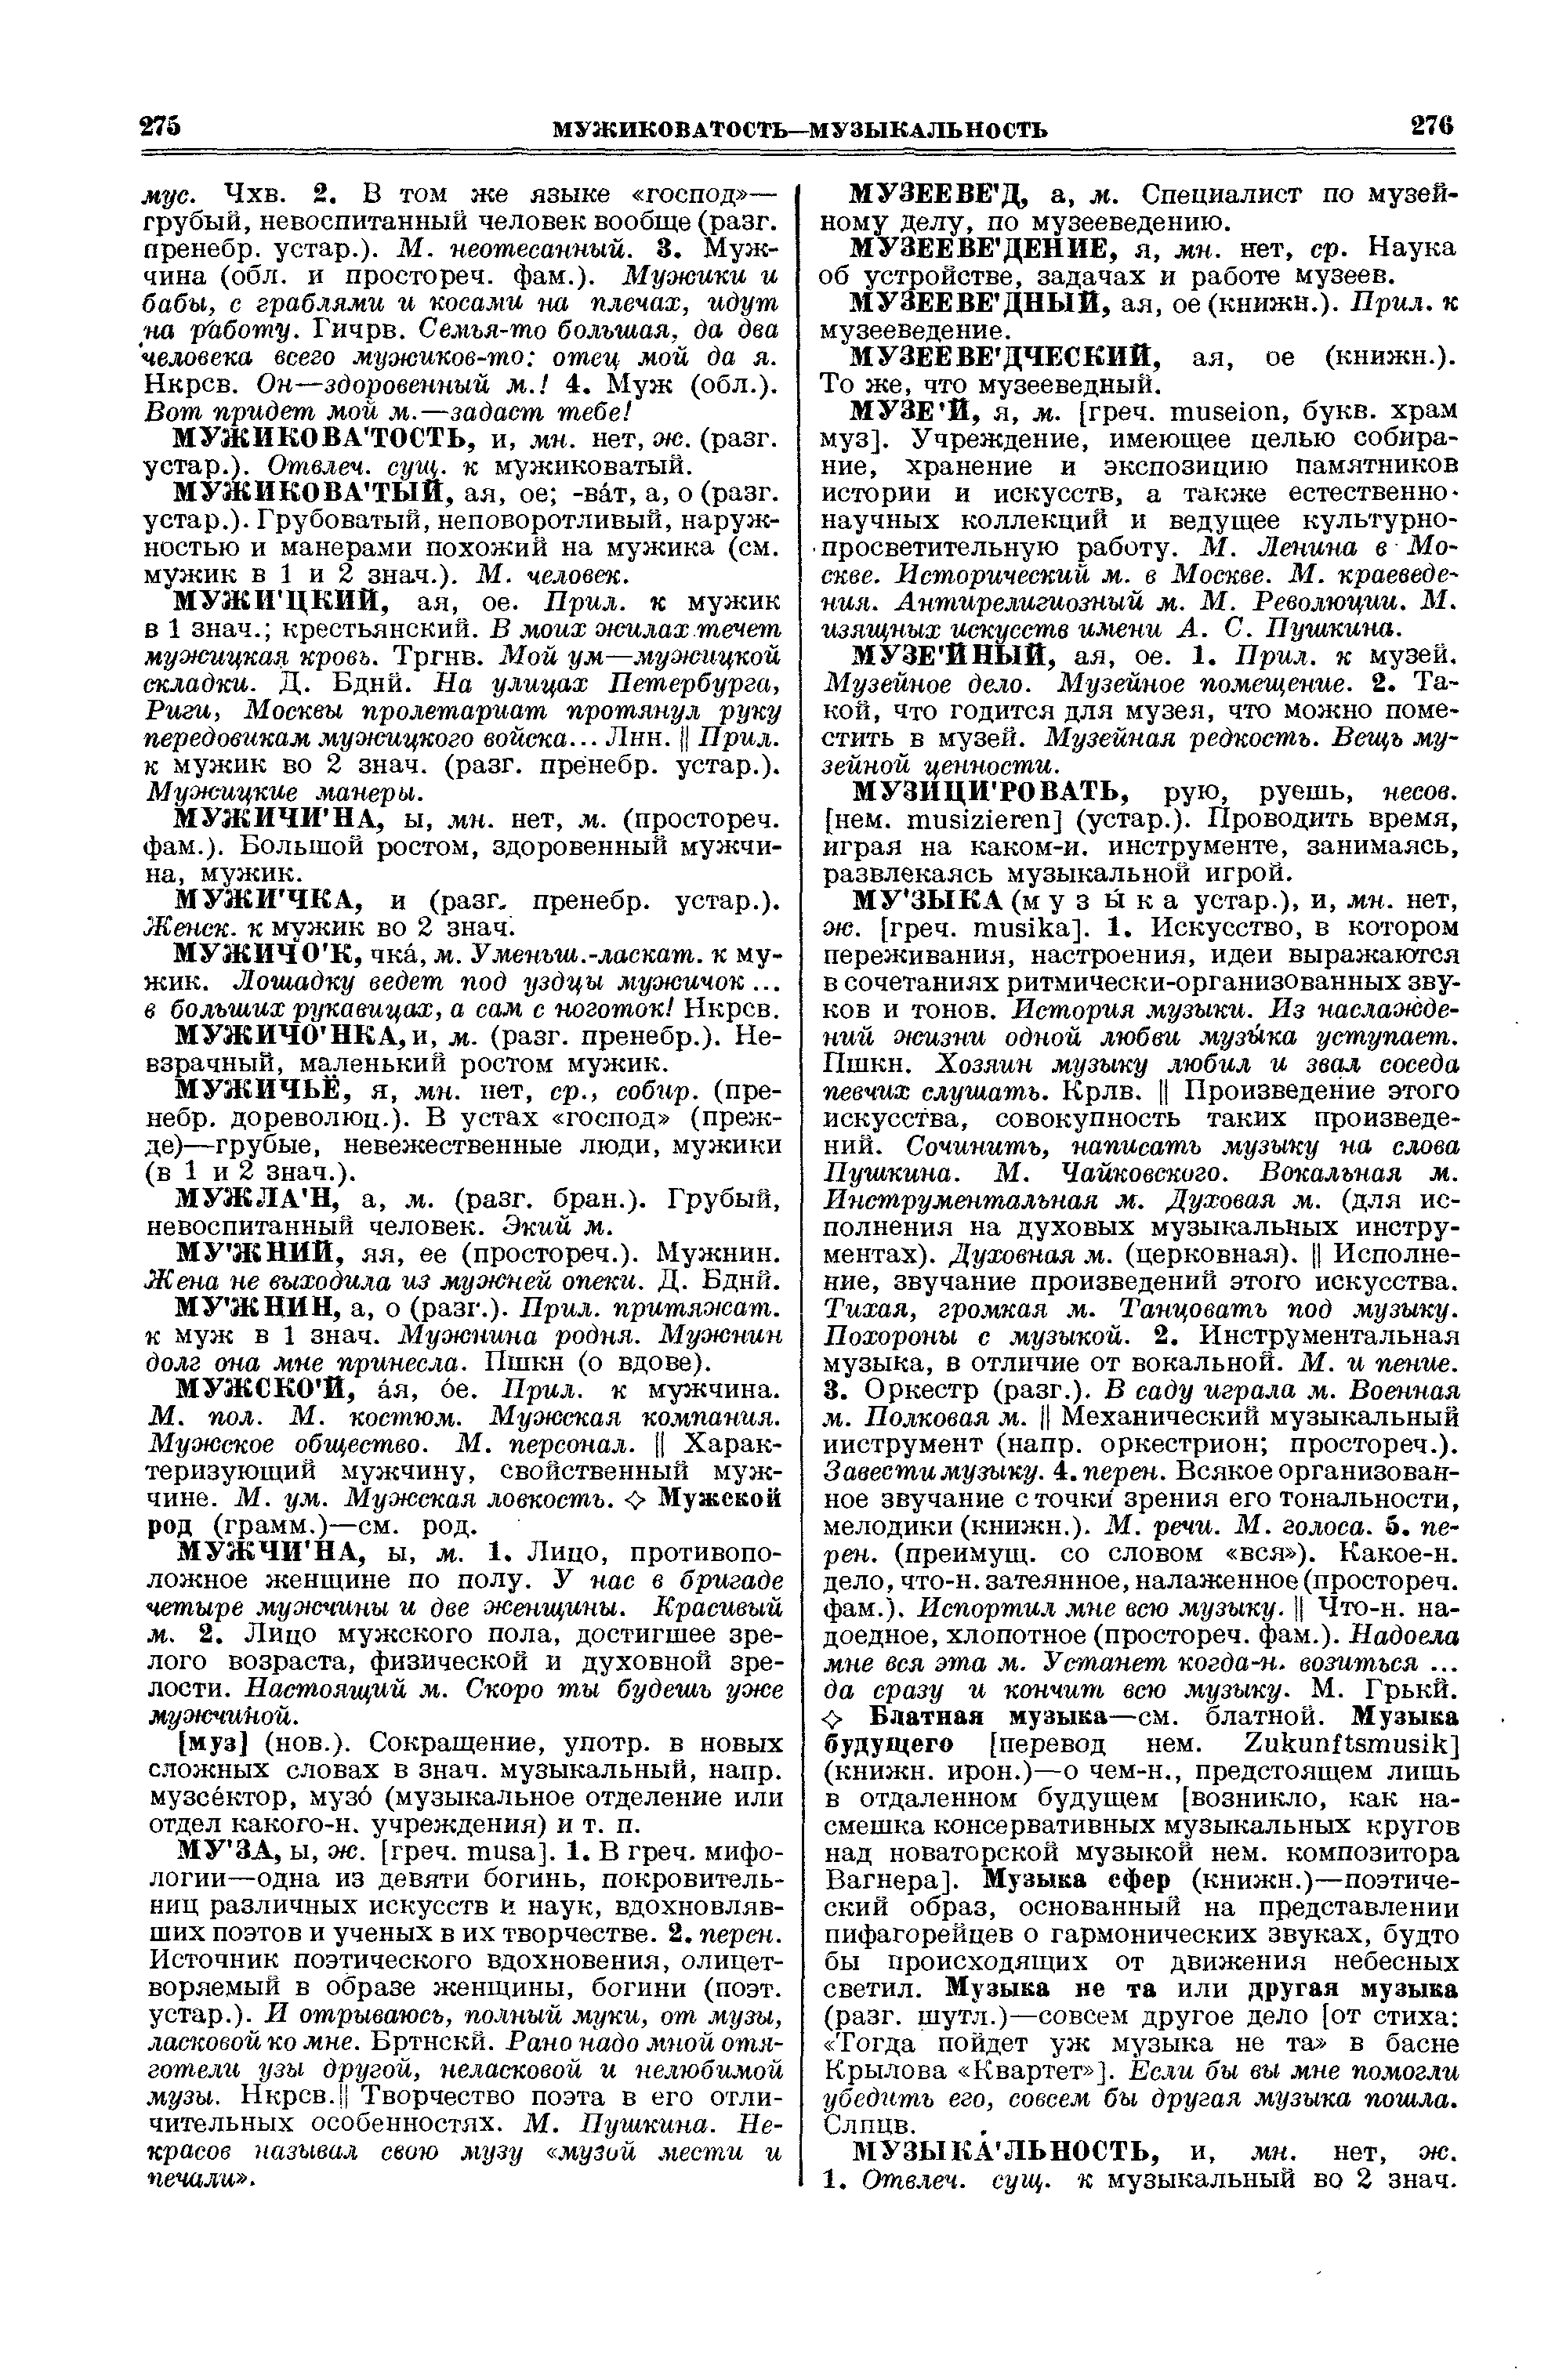 Фотокопия pdf / скан страницы 138 толкового словаря Ушакова (том 2)